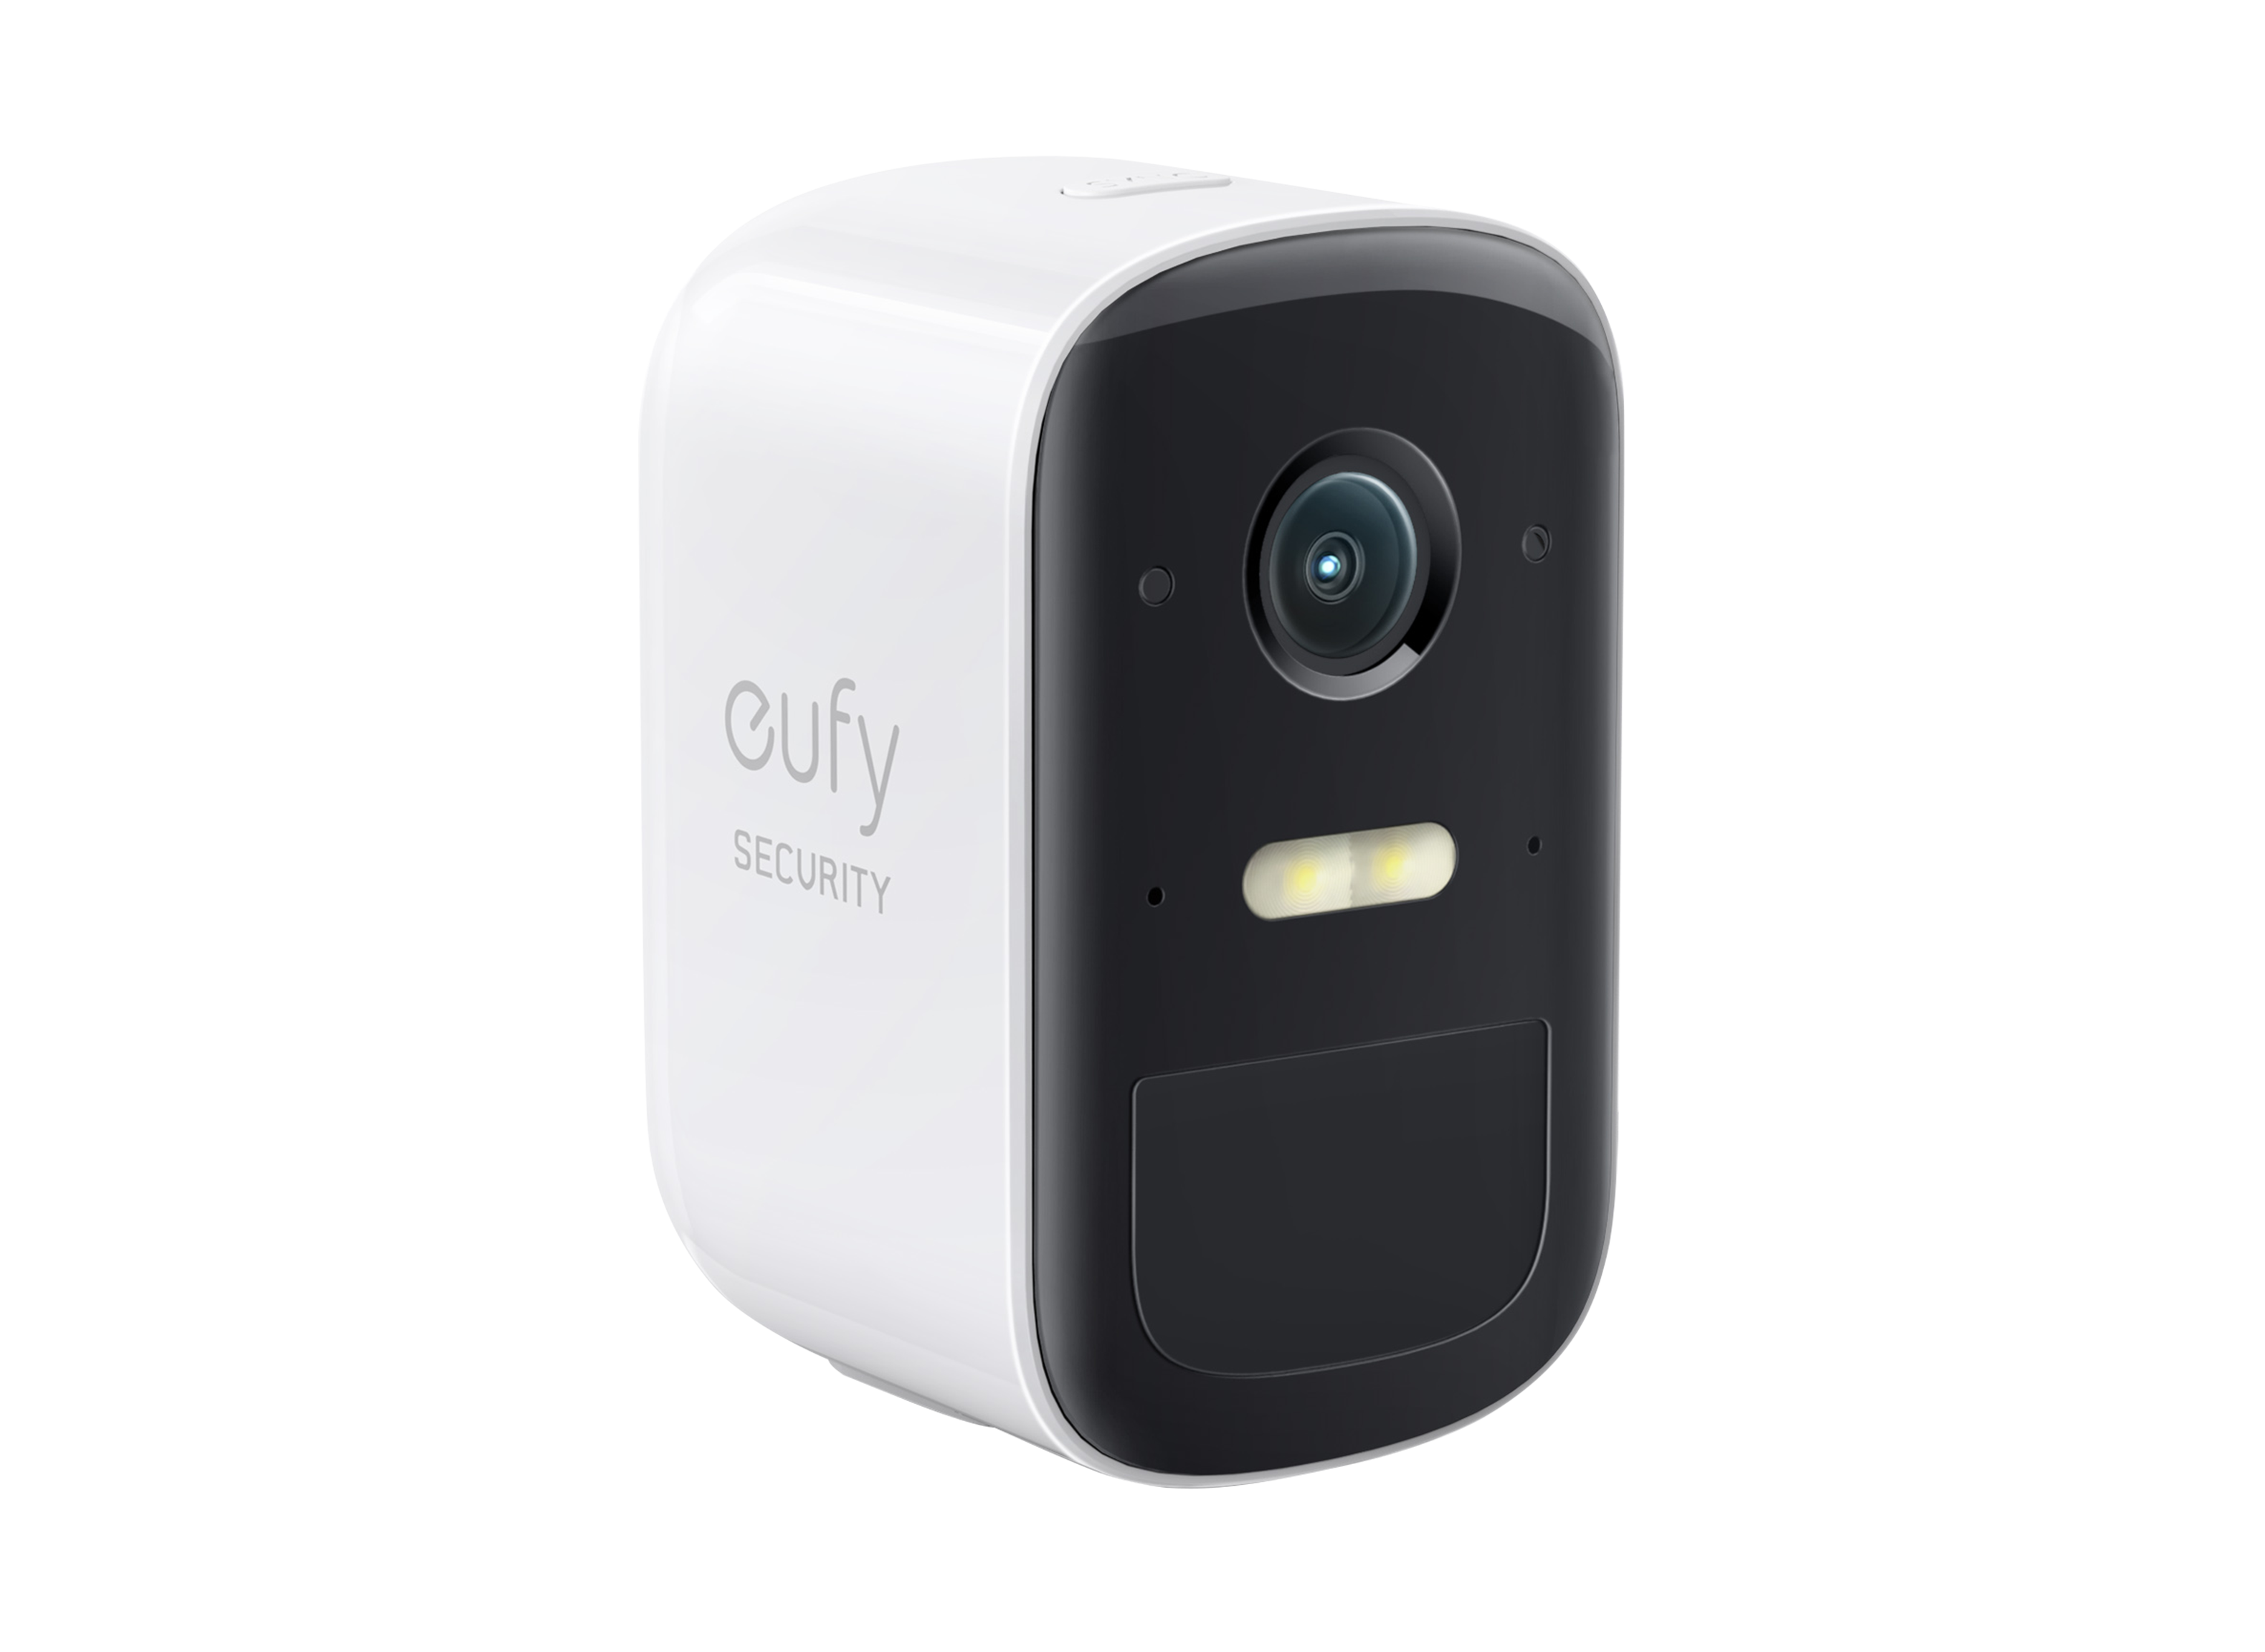 Eufy Cam 2C T8830 (1 Cam Kit) Home Security Camera Review